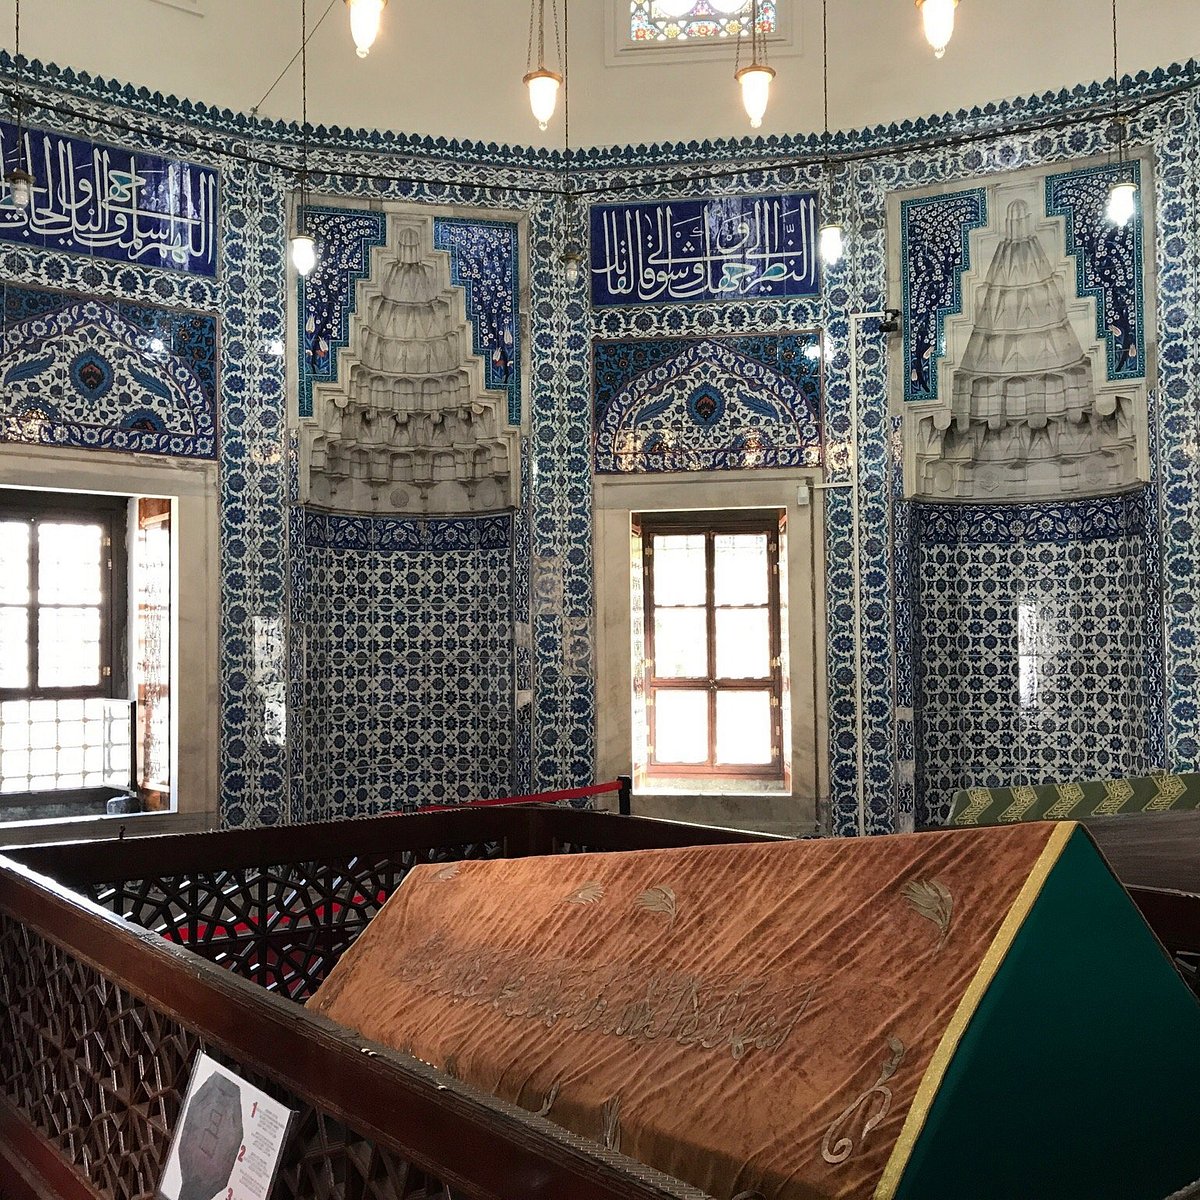 мечеть хюррем султан в стамбуле фото внутри и снаружи